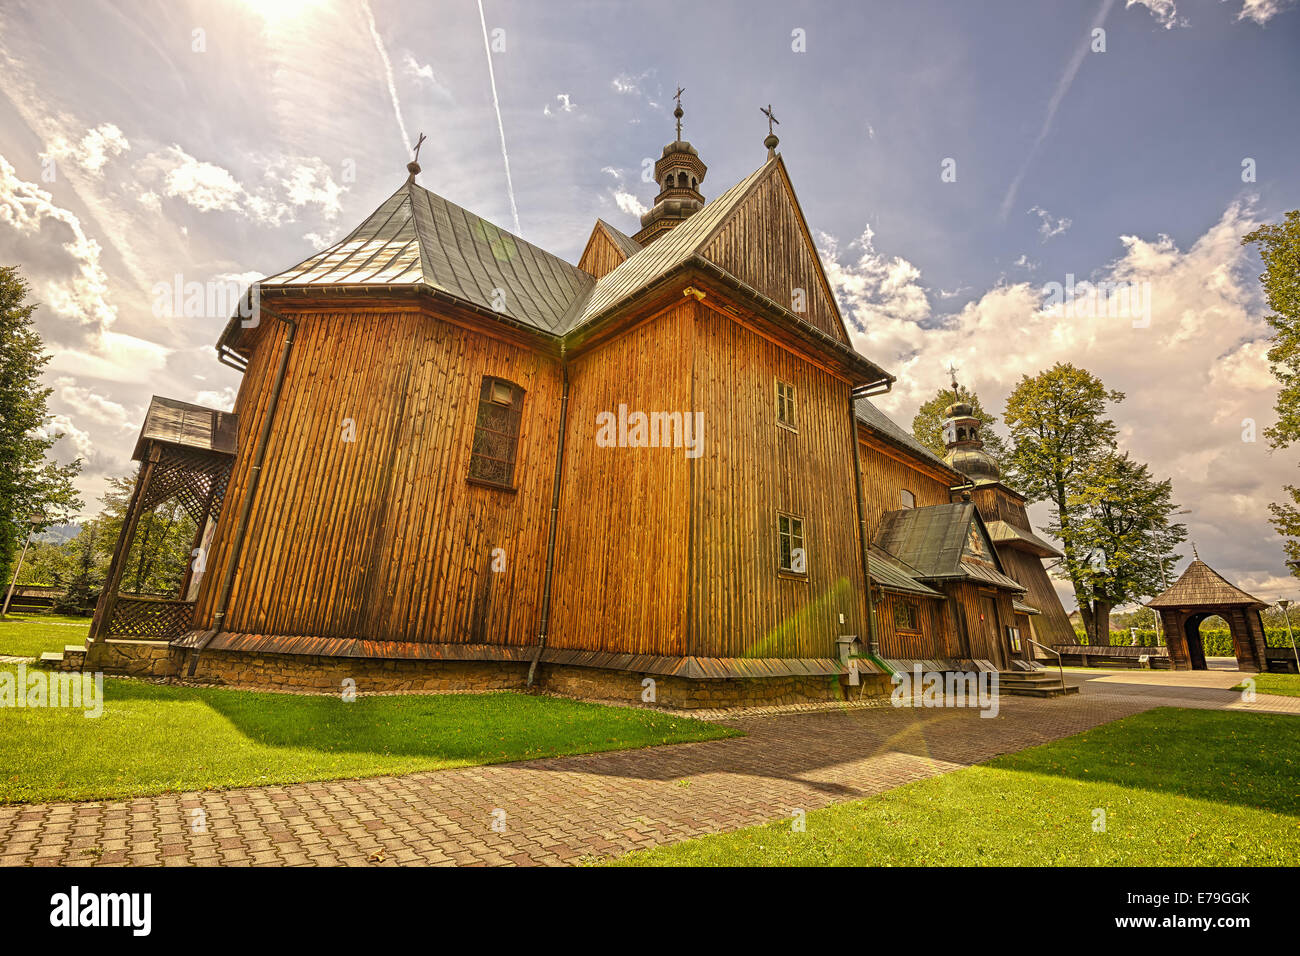 Legno bella chiesa parrocchiale della Immacolata Concezione in Spytkowice vicino a Cracovia, Nowy Targ County, Polonia. Immagine hdr shot Foto Stock